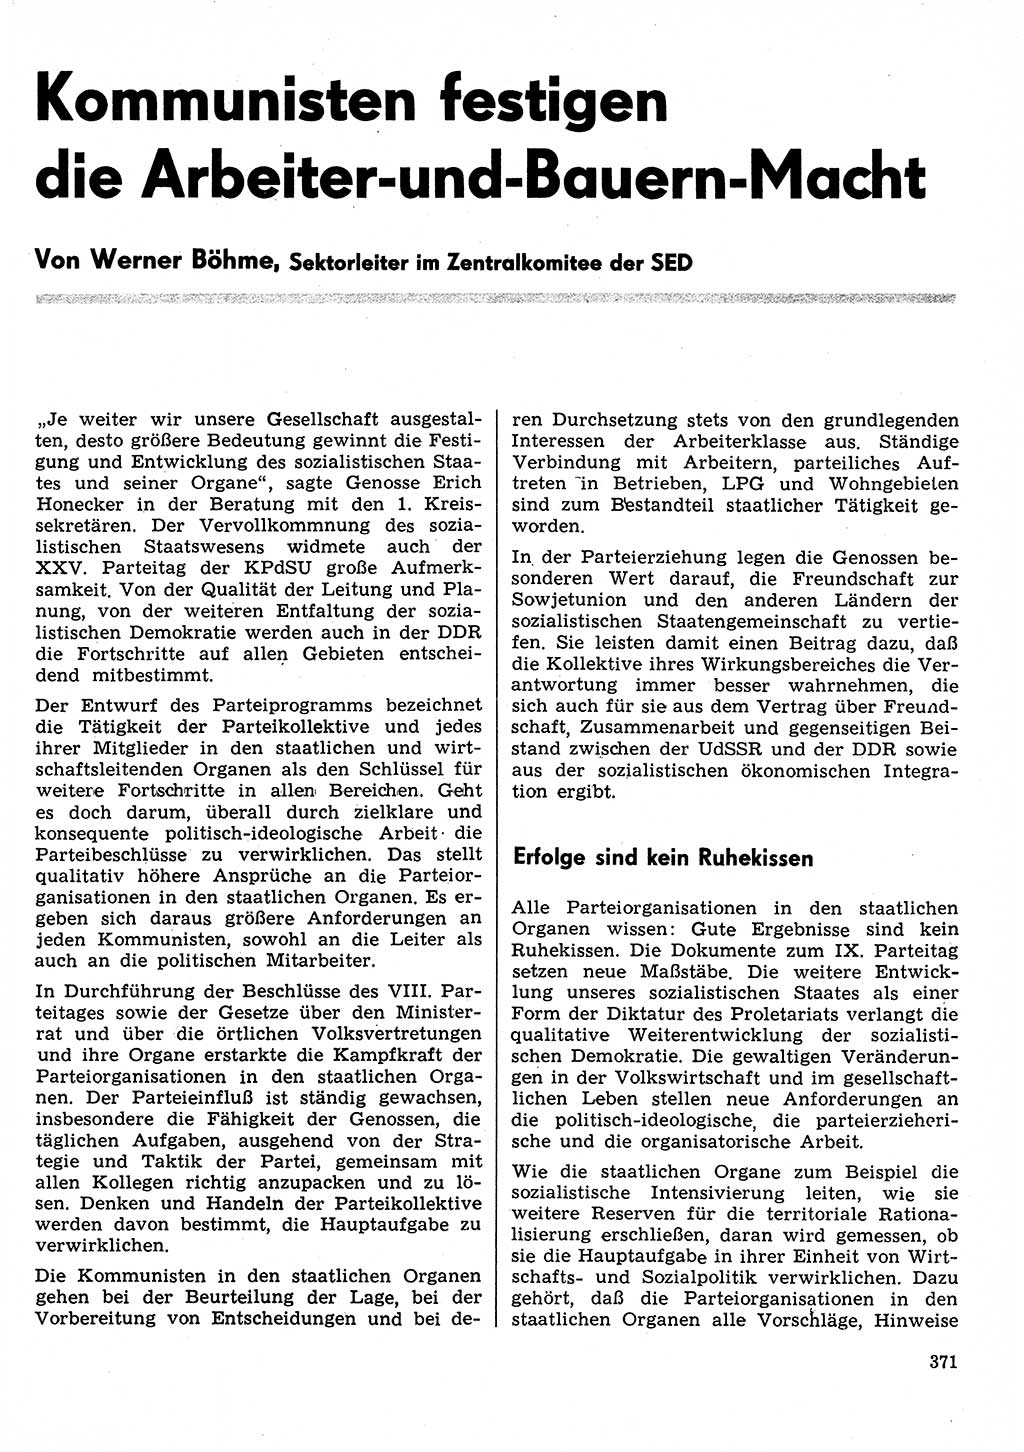 Neuer Weg (NW), Organ des Zentralkomitees (ZK) der SED (Sozialistische Einheitspartei Deutschlands) für Fragen des Parteilebens, 31. Jahrgang [Deutsche Demokratische Republik (DDR)] 1976, Seite 371 (NW ZK SED DDR 1976, S. 371)